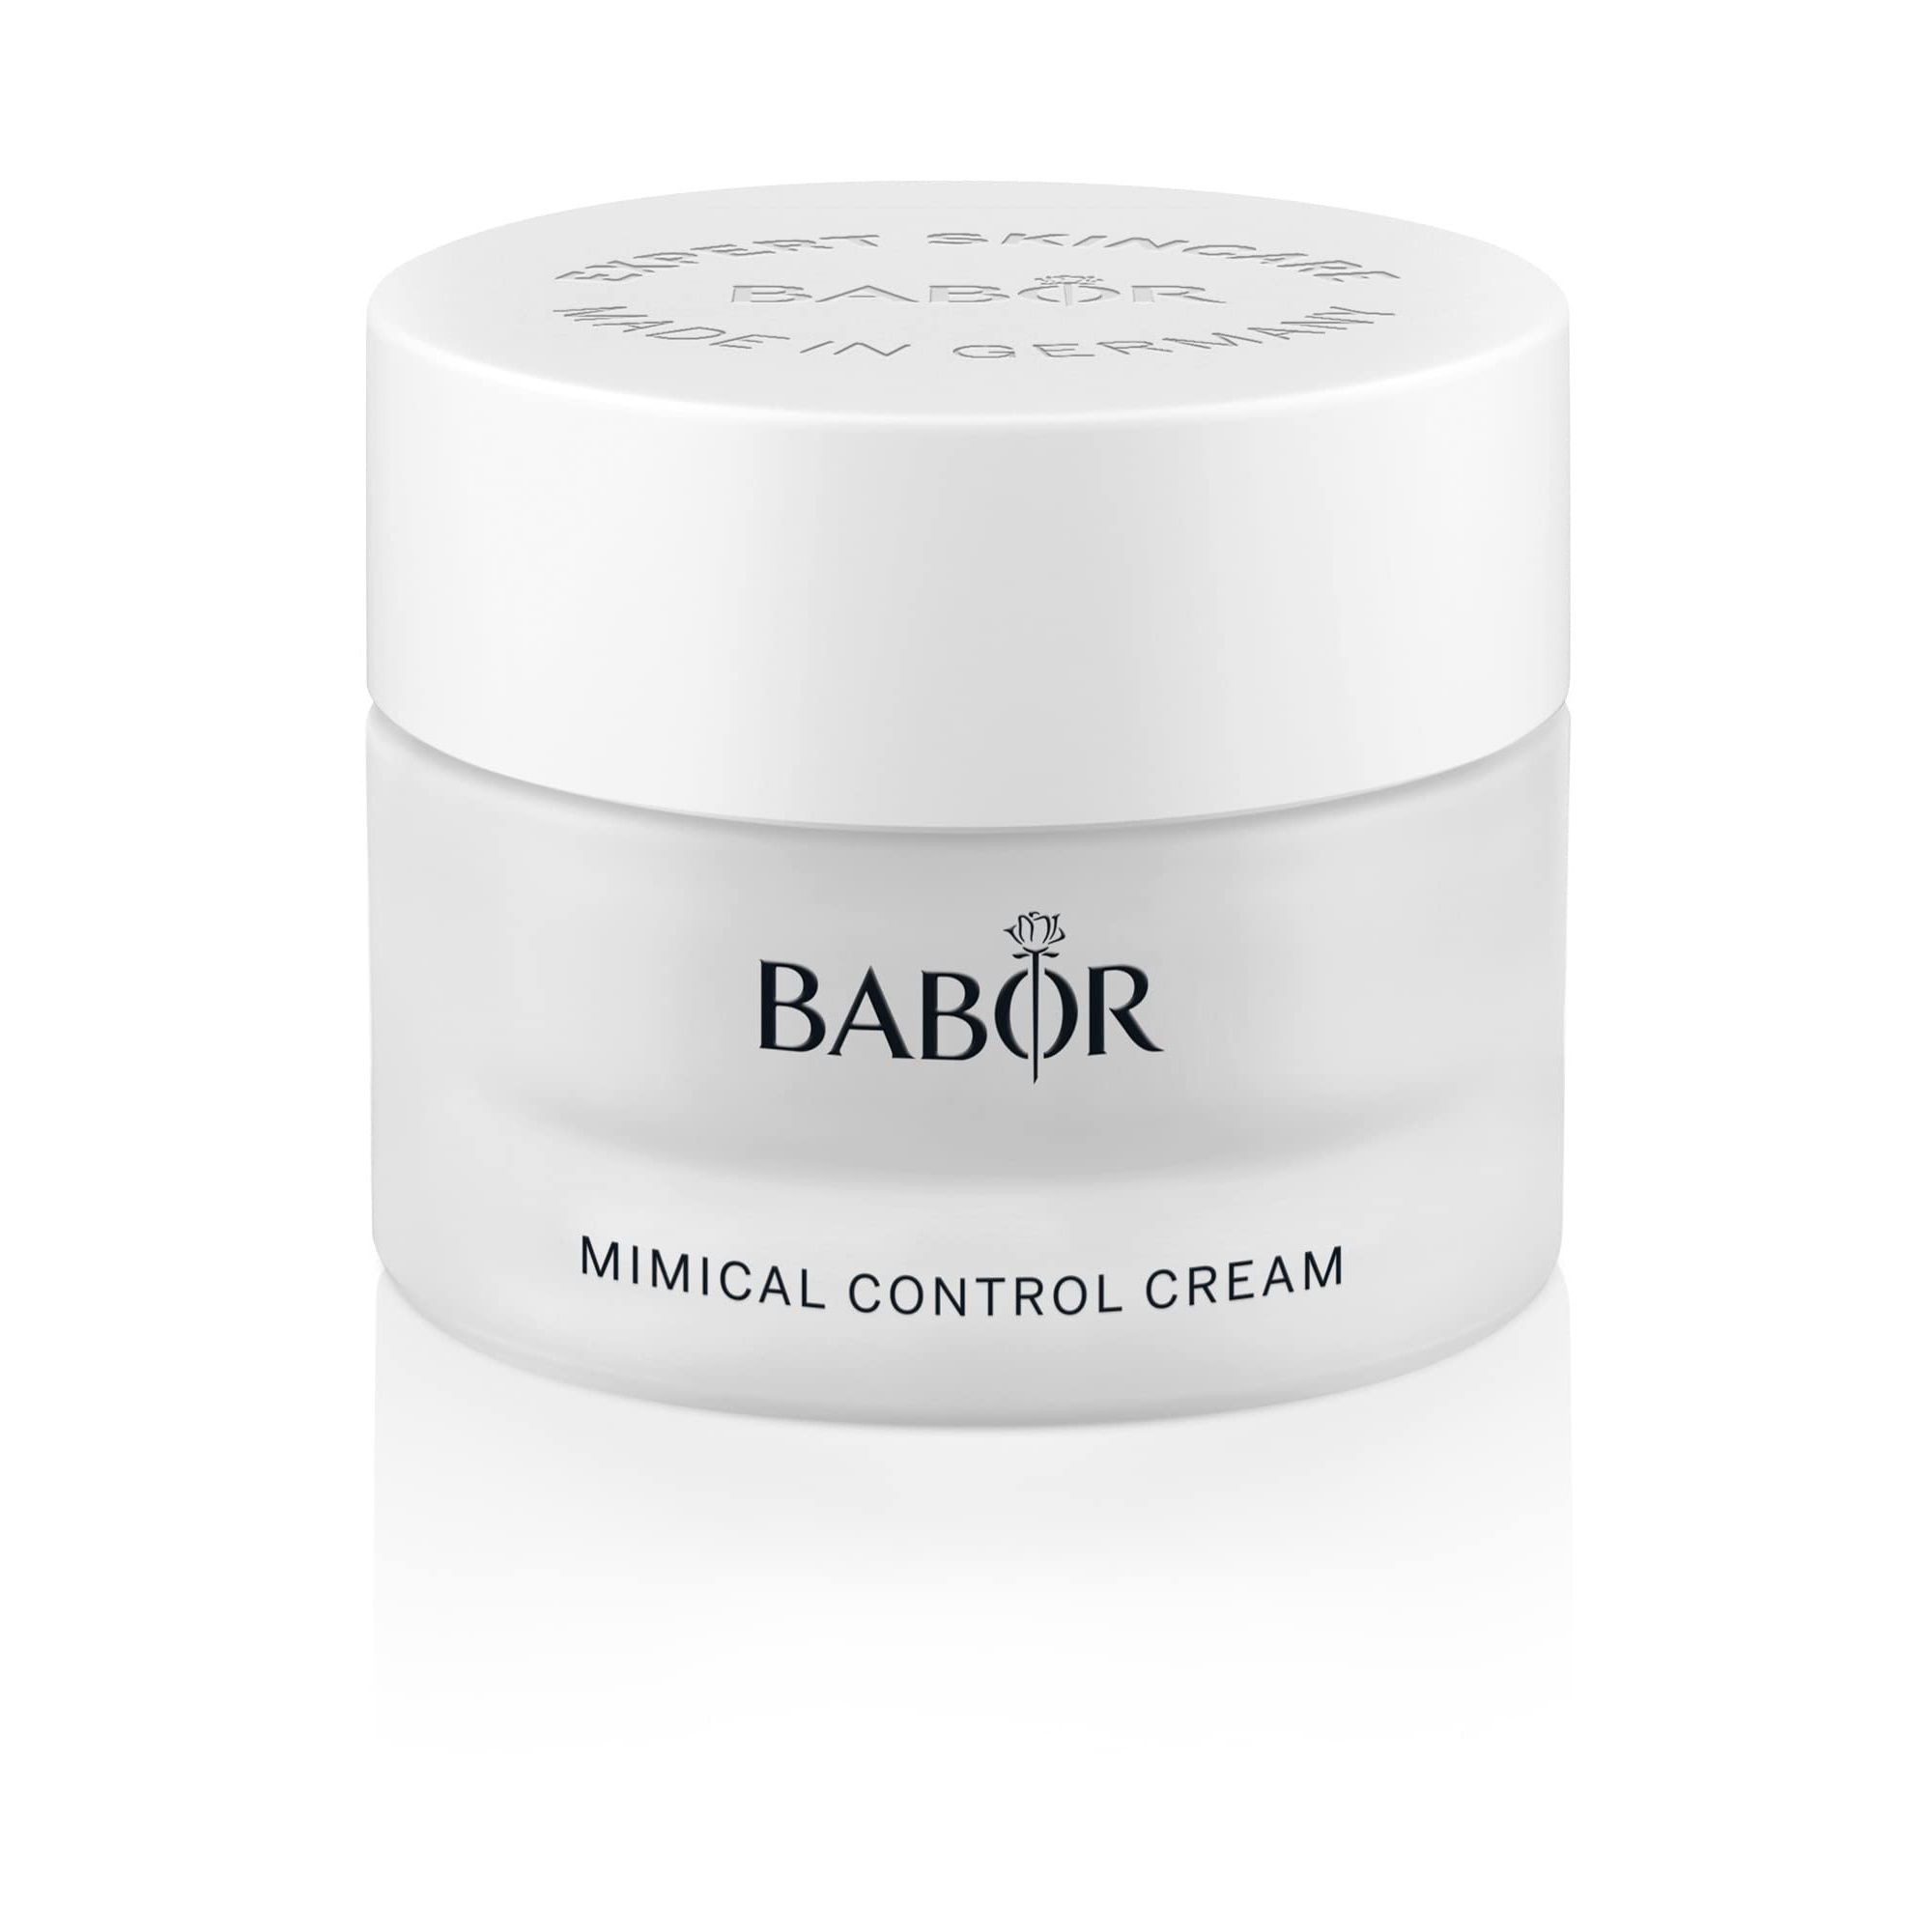 babor skinovage mimical control